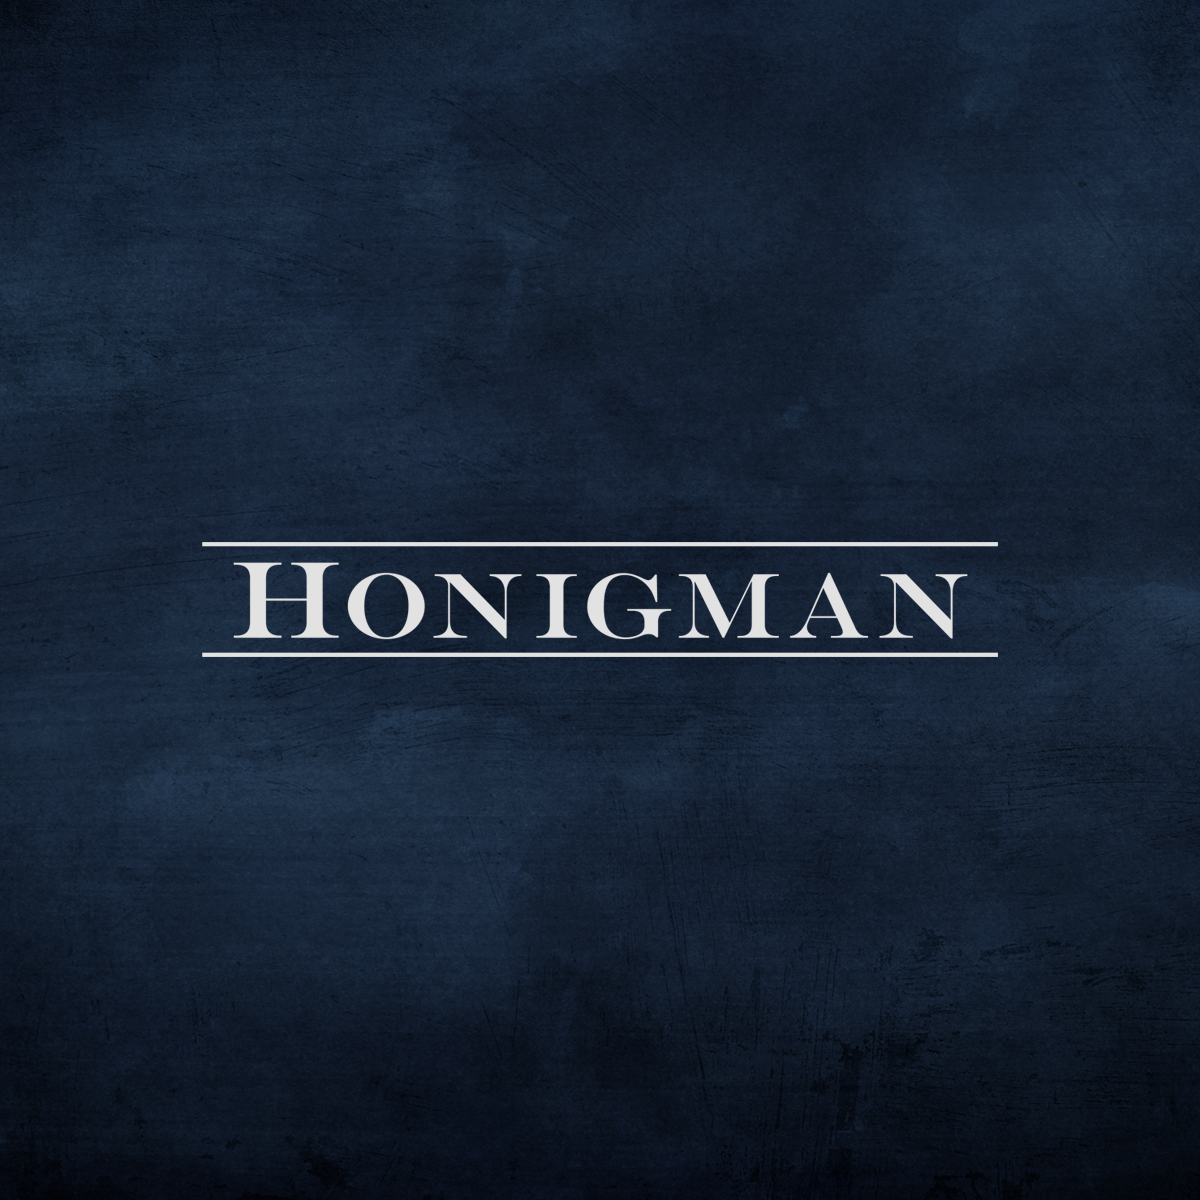 www.honigman.com